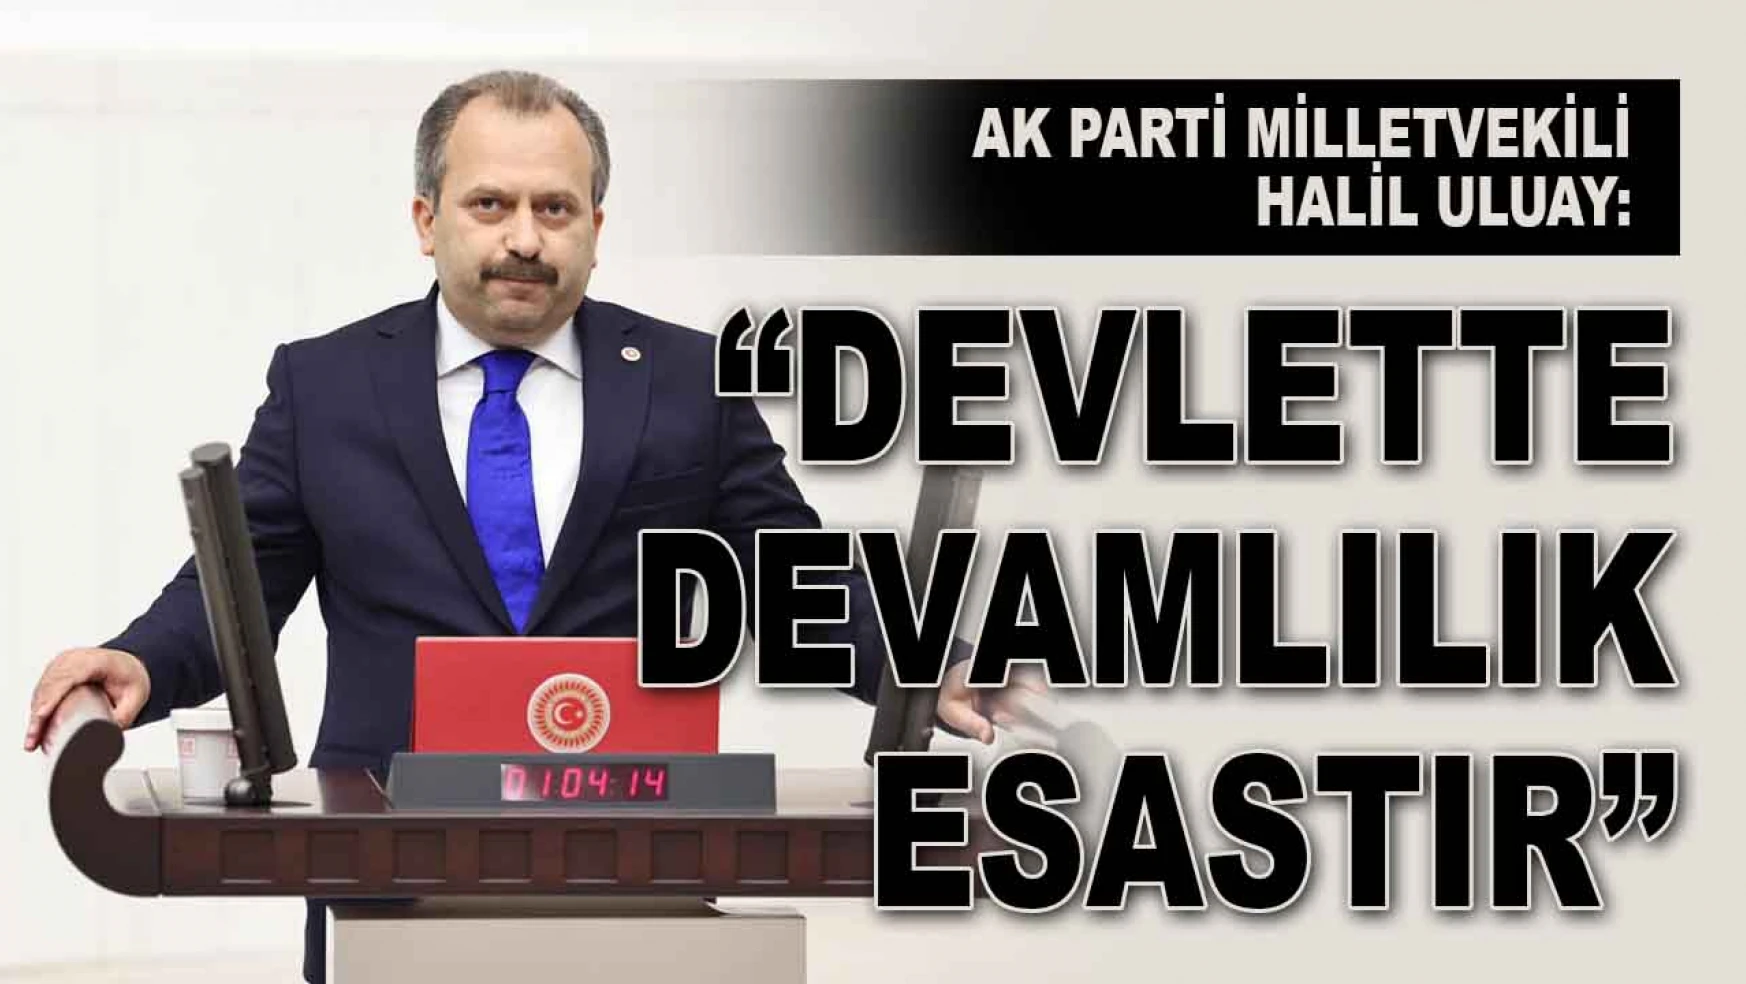 Ak Parti Milletvekili Halil Uluay: 'Devlette Devamlılık Esastır'